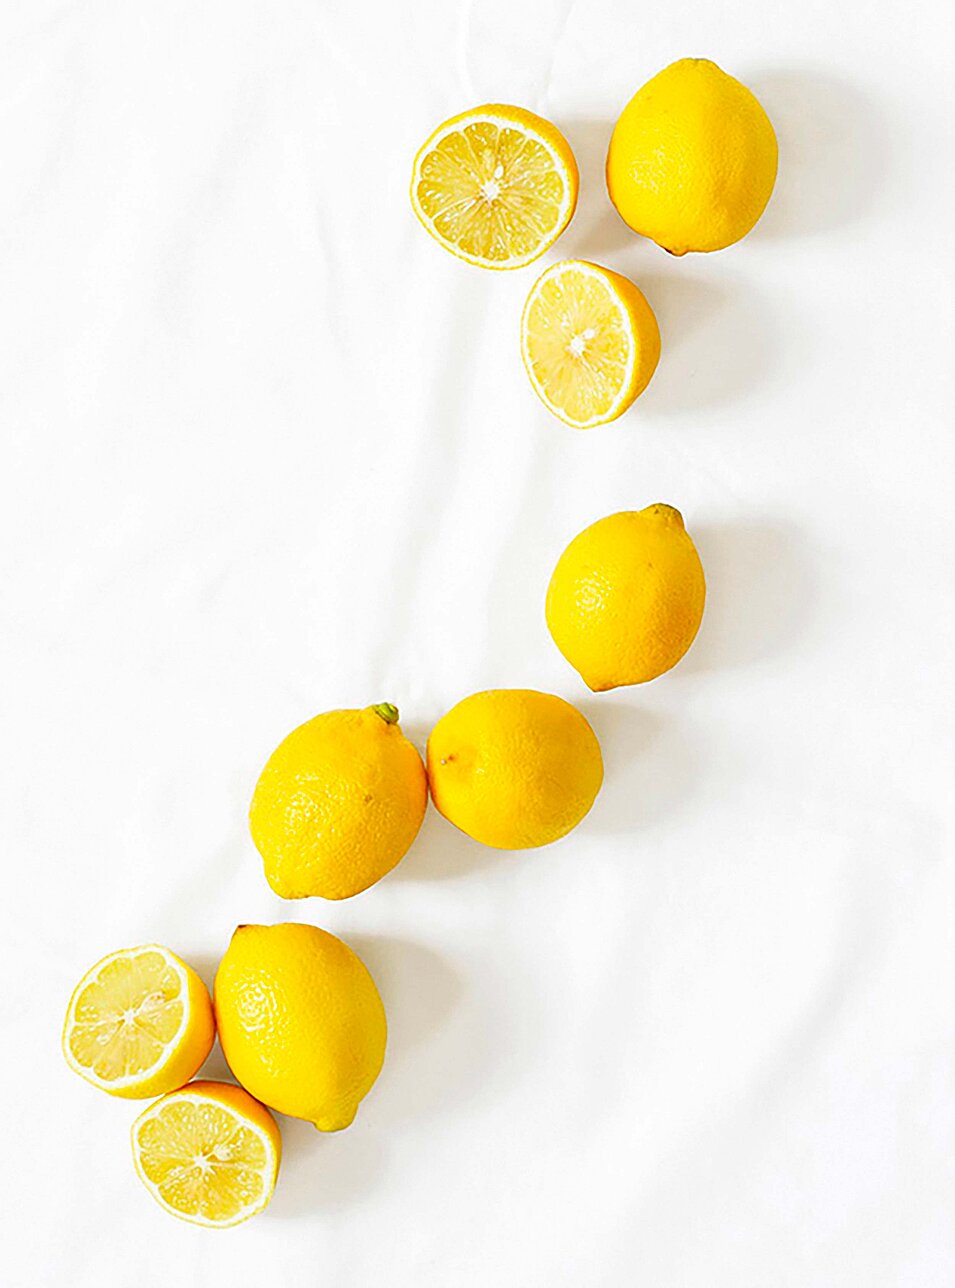 MIK atelier design lemons branding bern